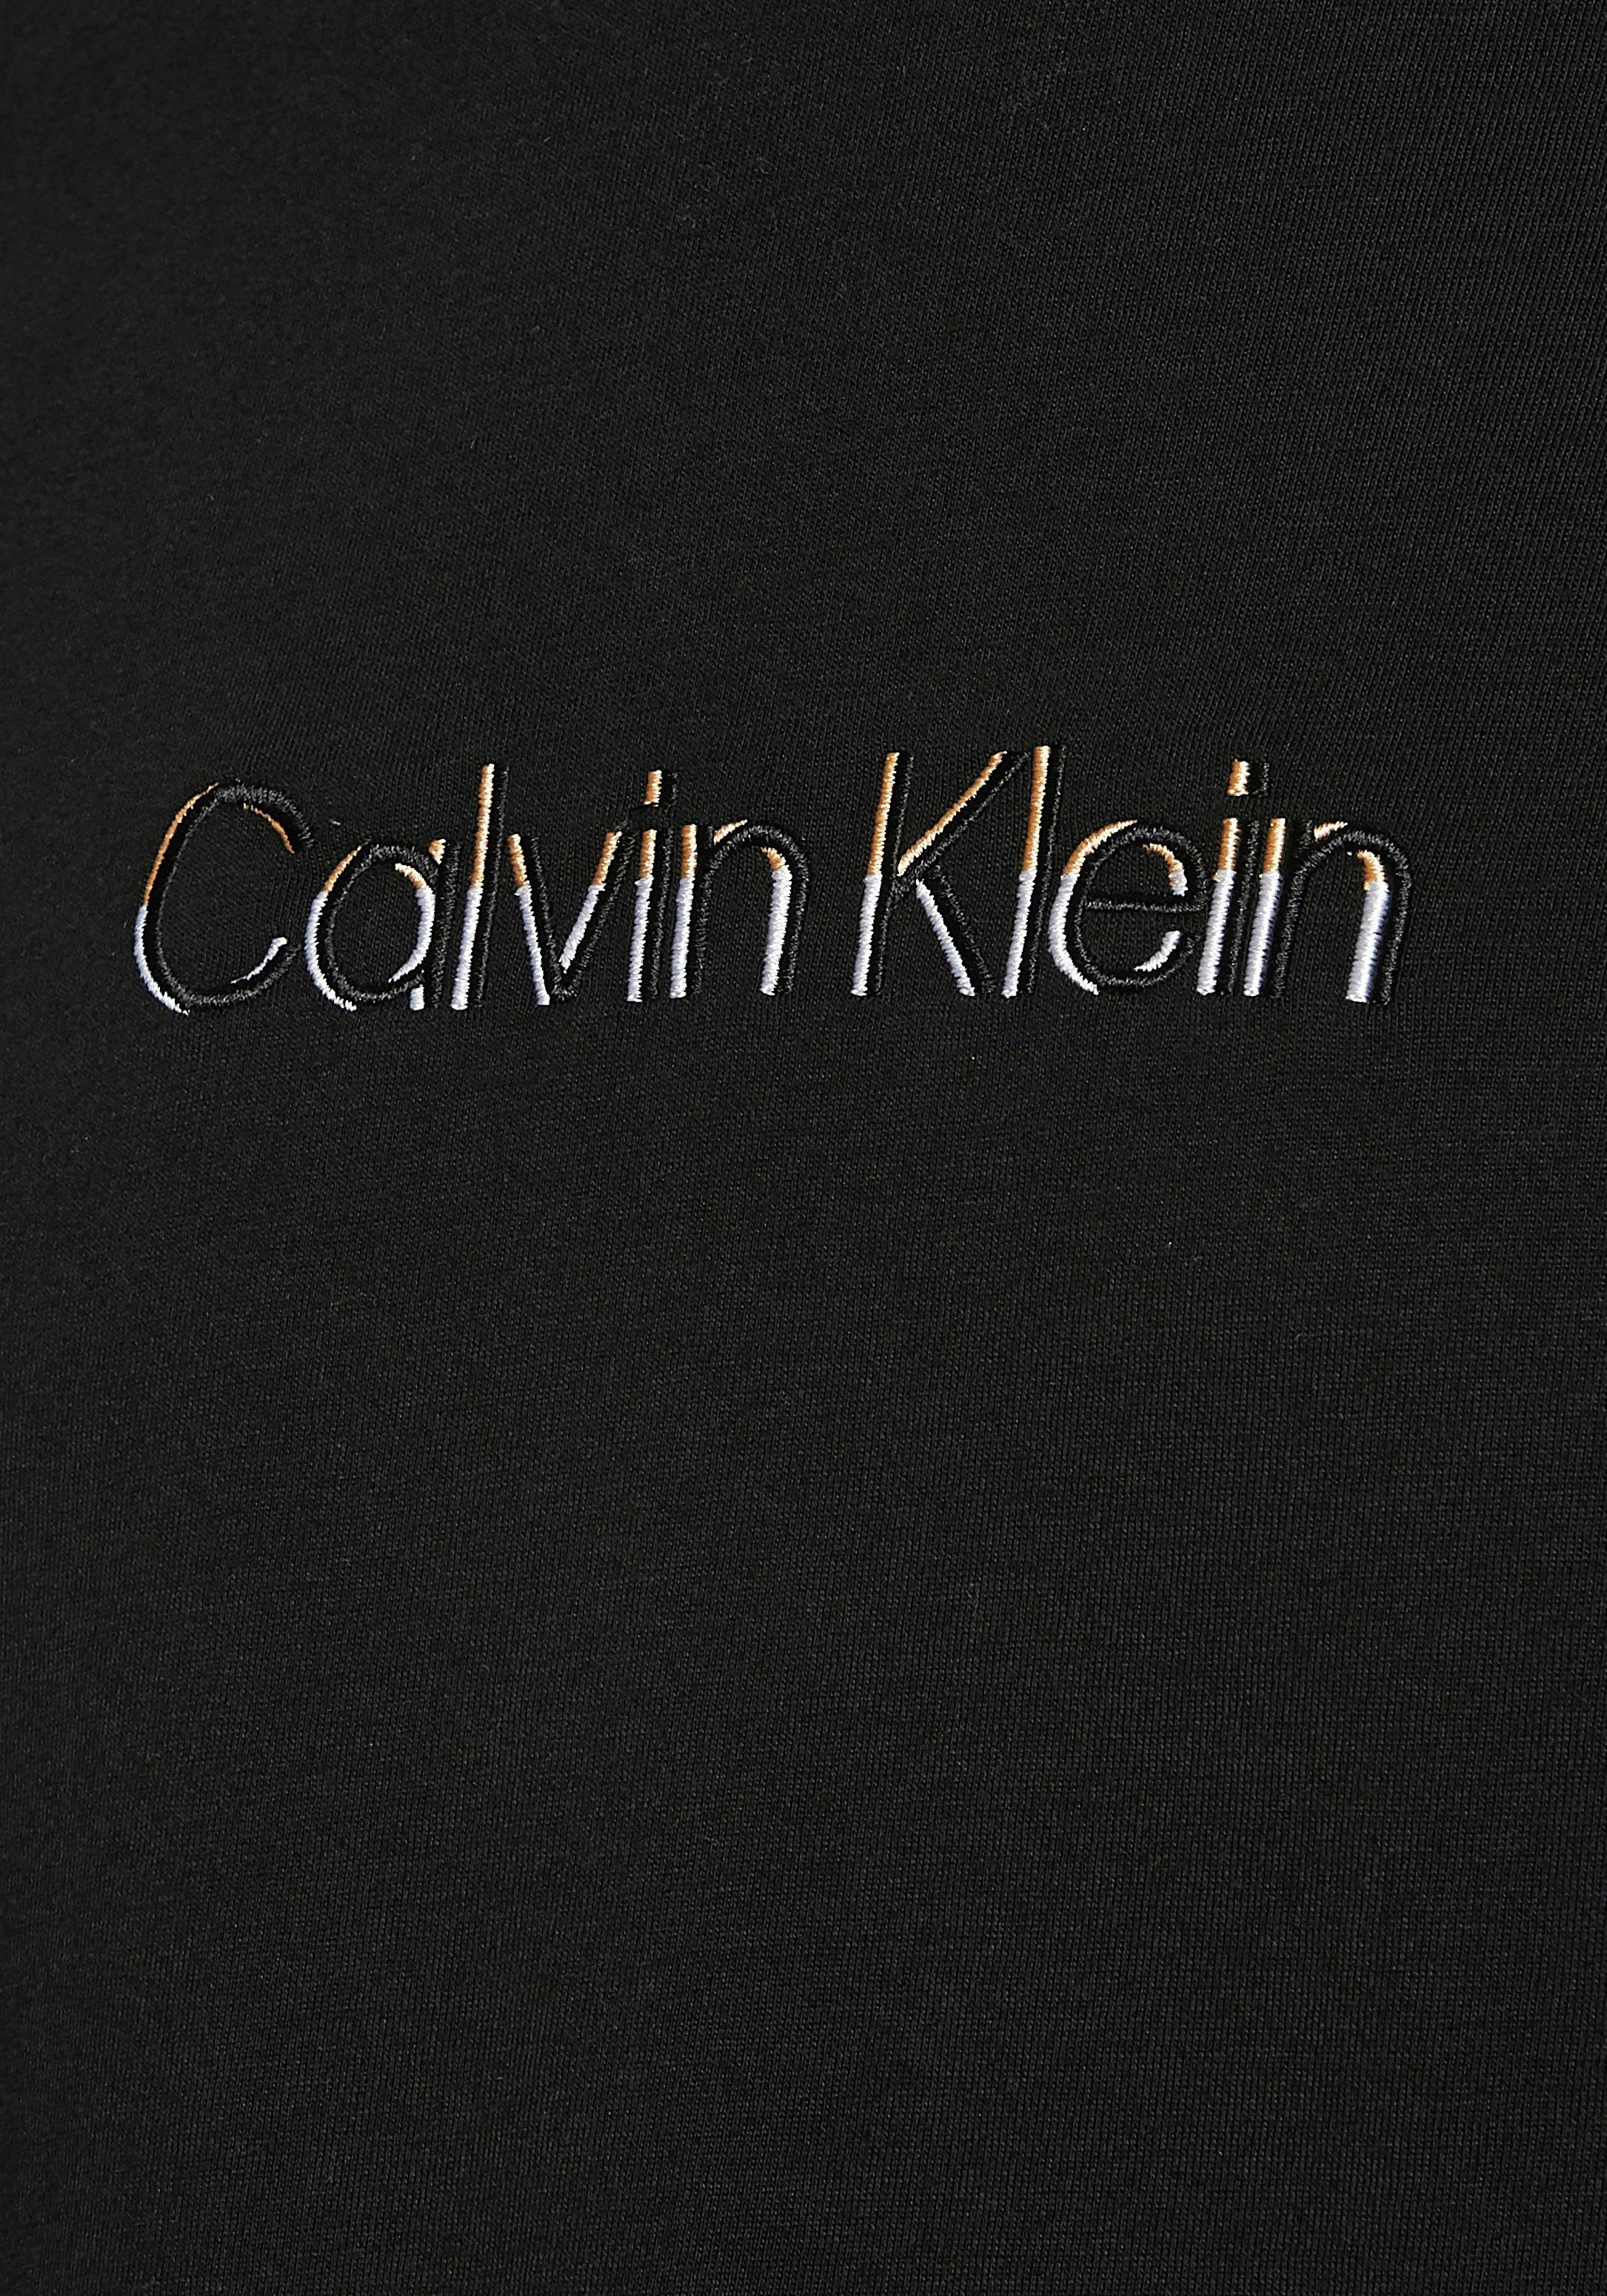 schwarz T-Shirt LOGO COLOR Klein Calvin MULTI